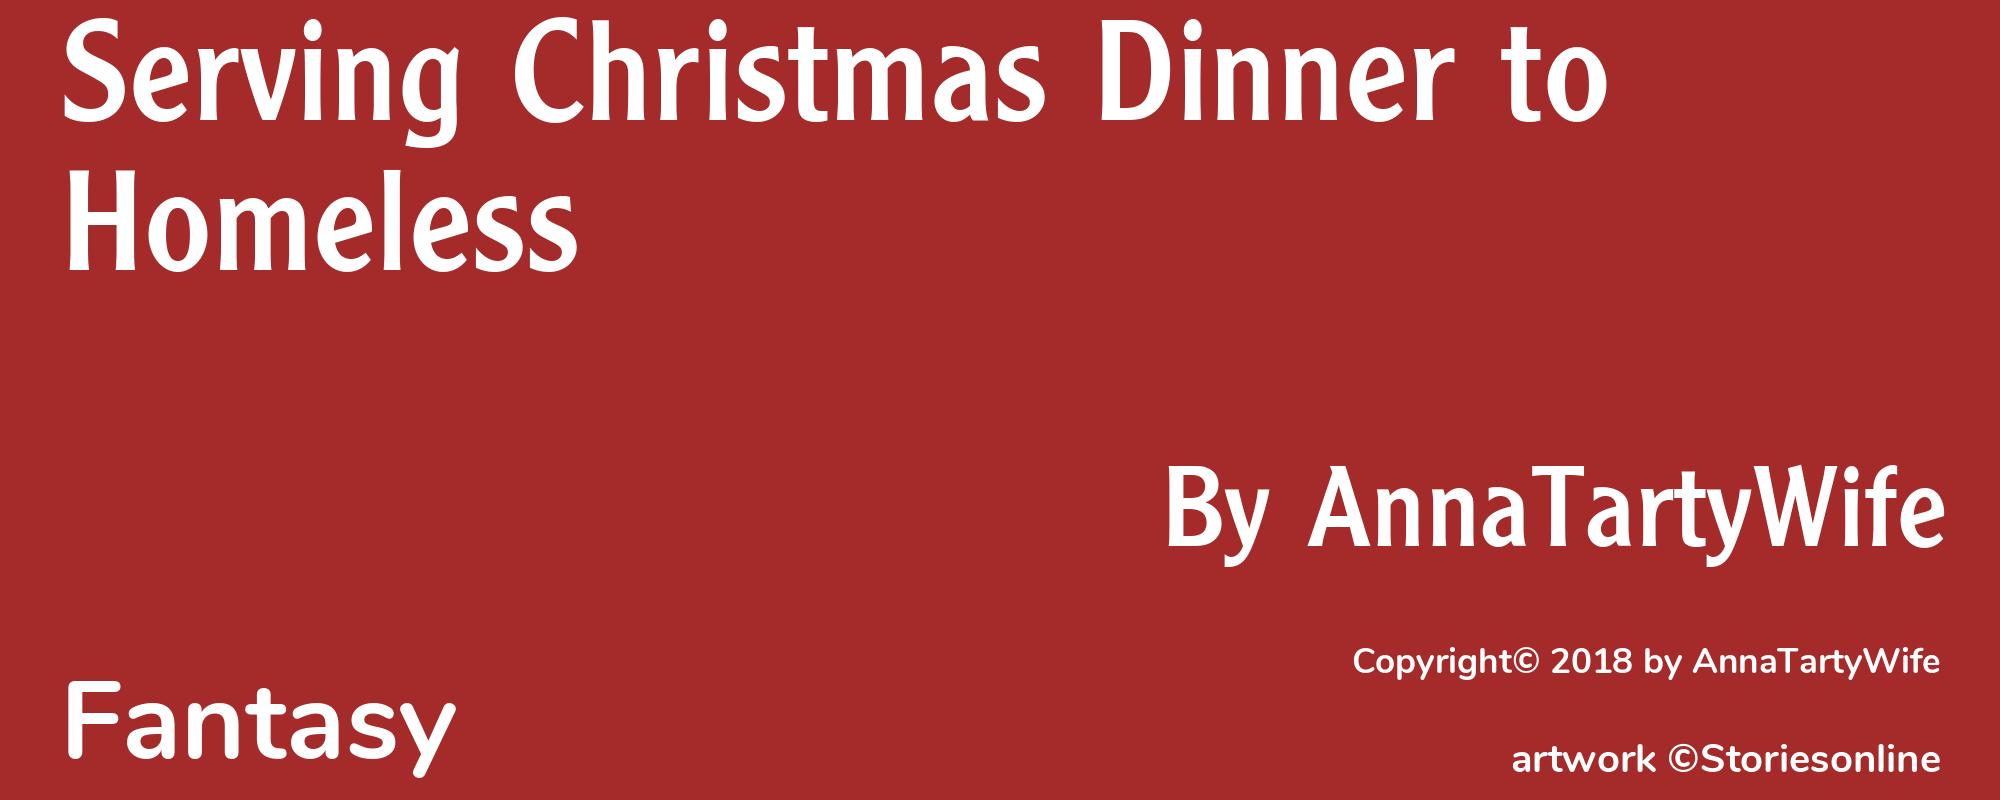 Serving Christmas Dinner to Homeless - Cover